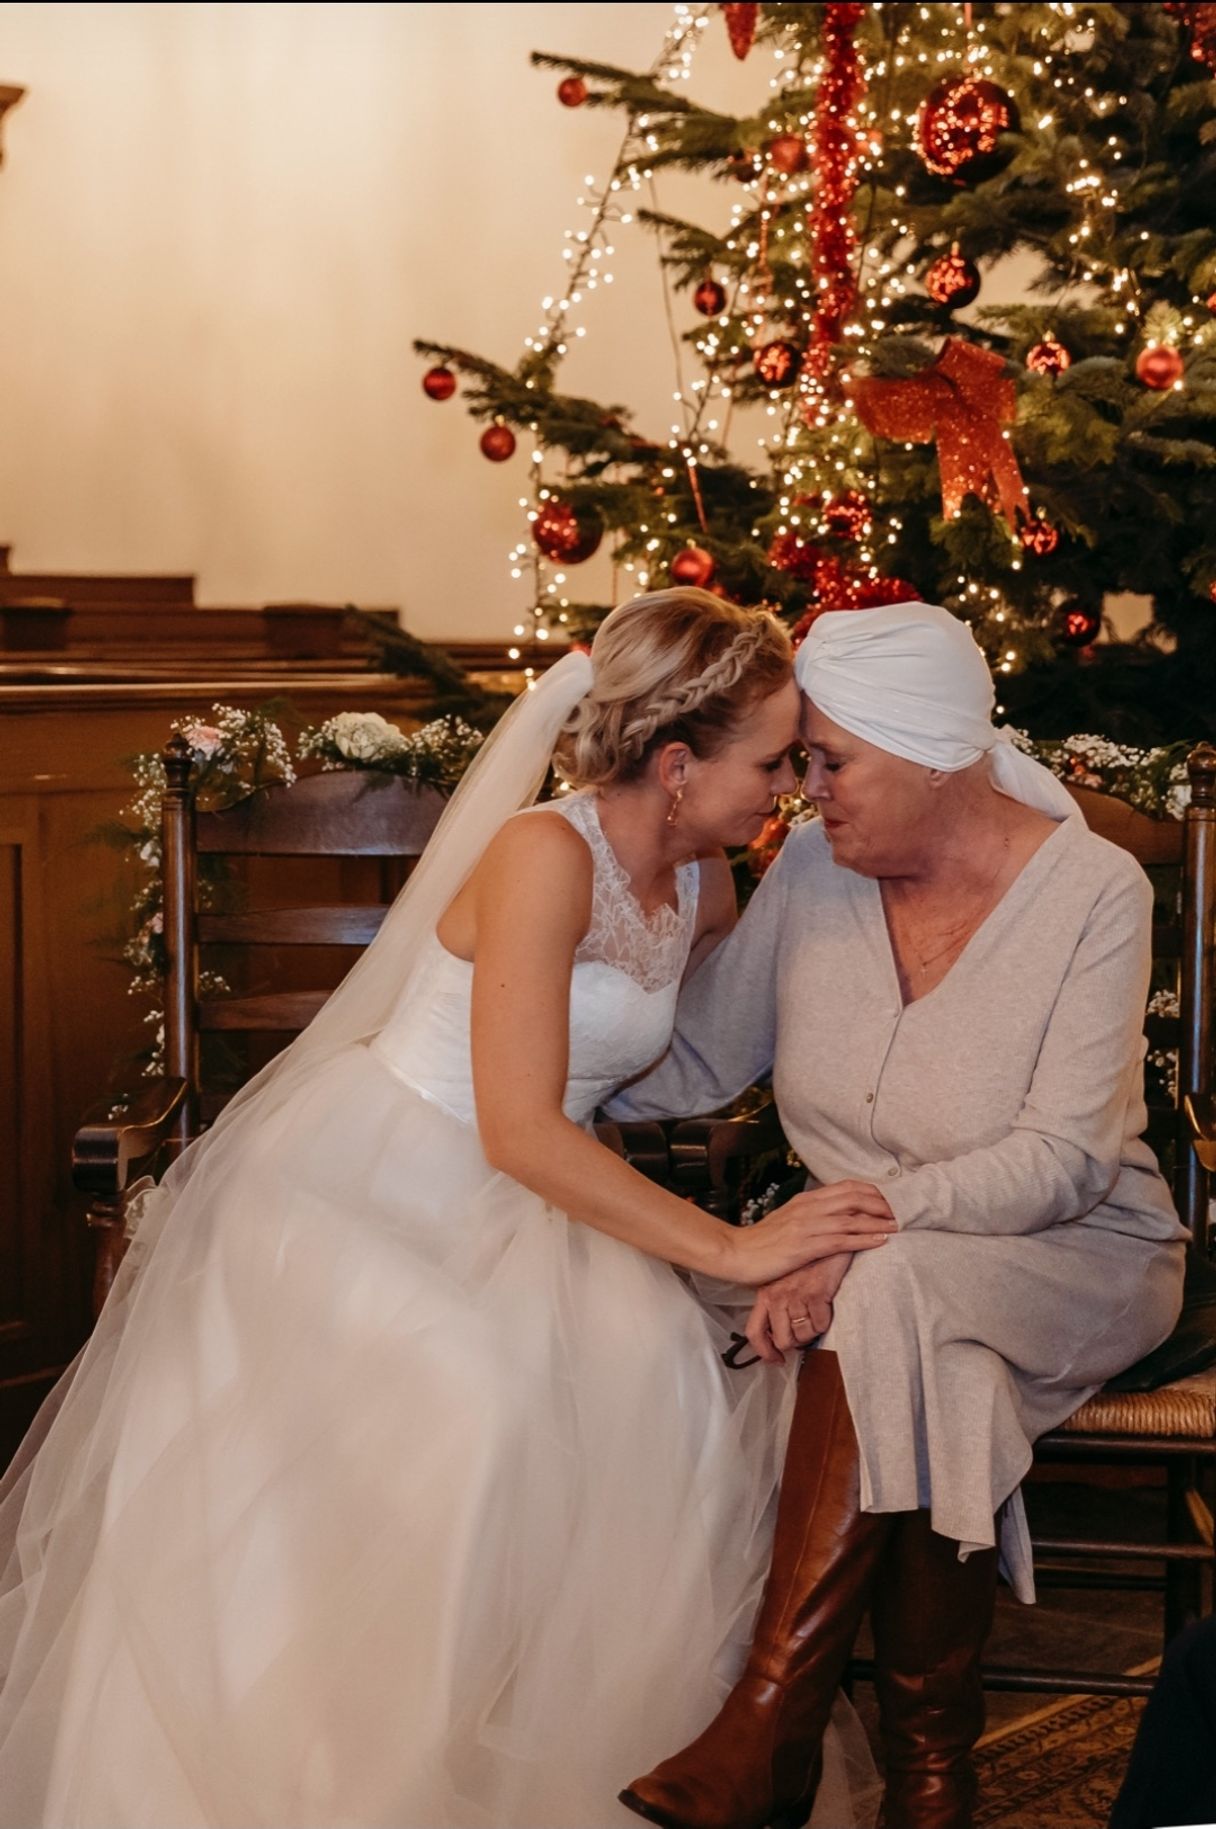 Jessica trouwt tijdens haar moeders laatste kerst